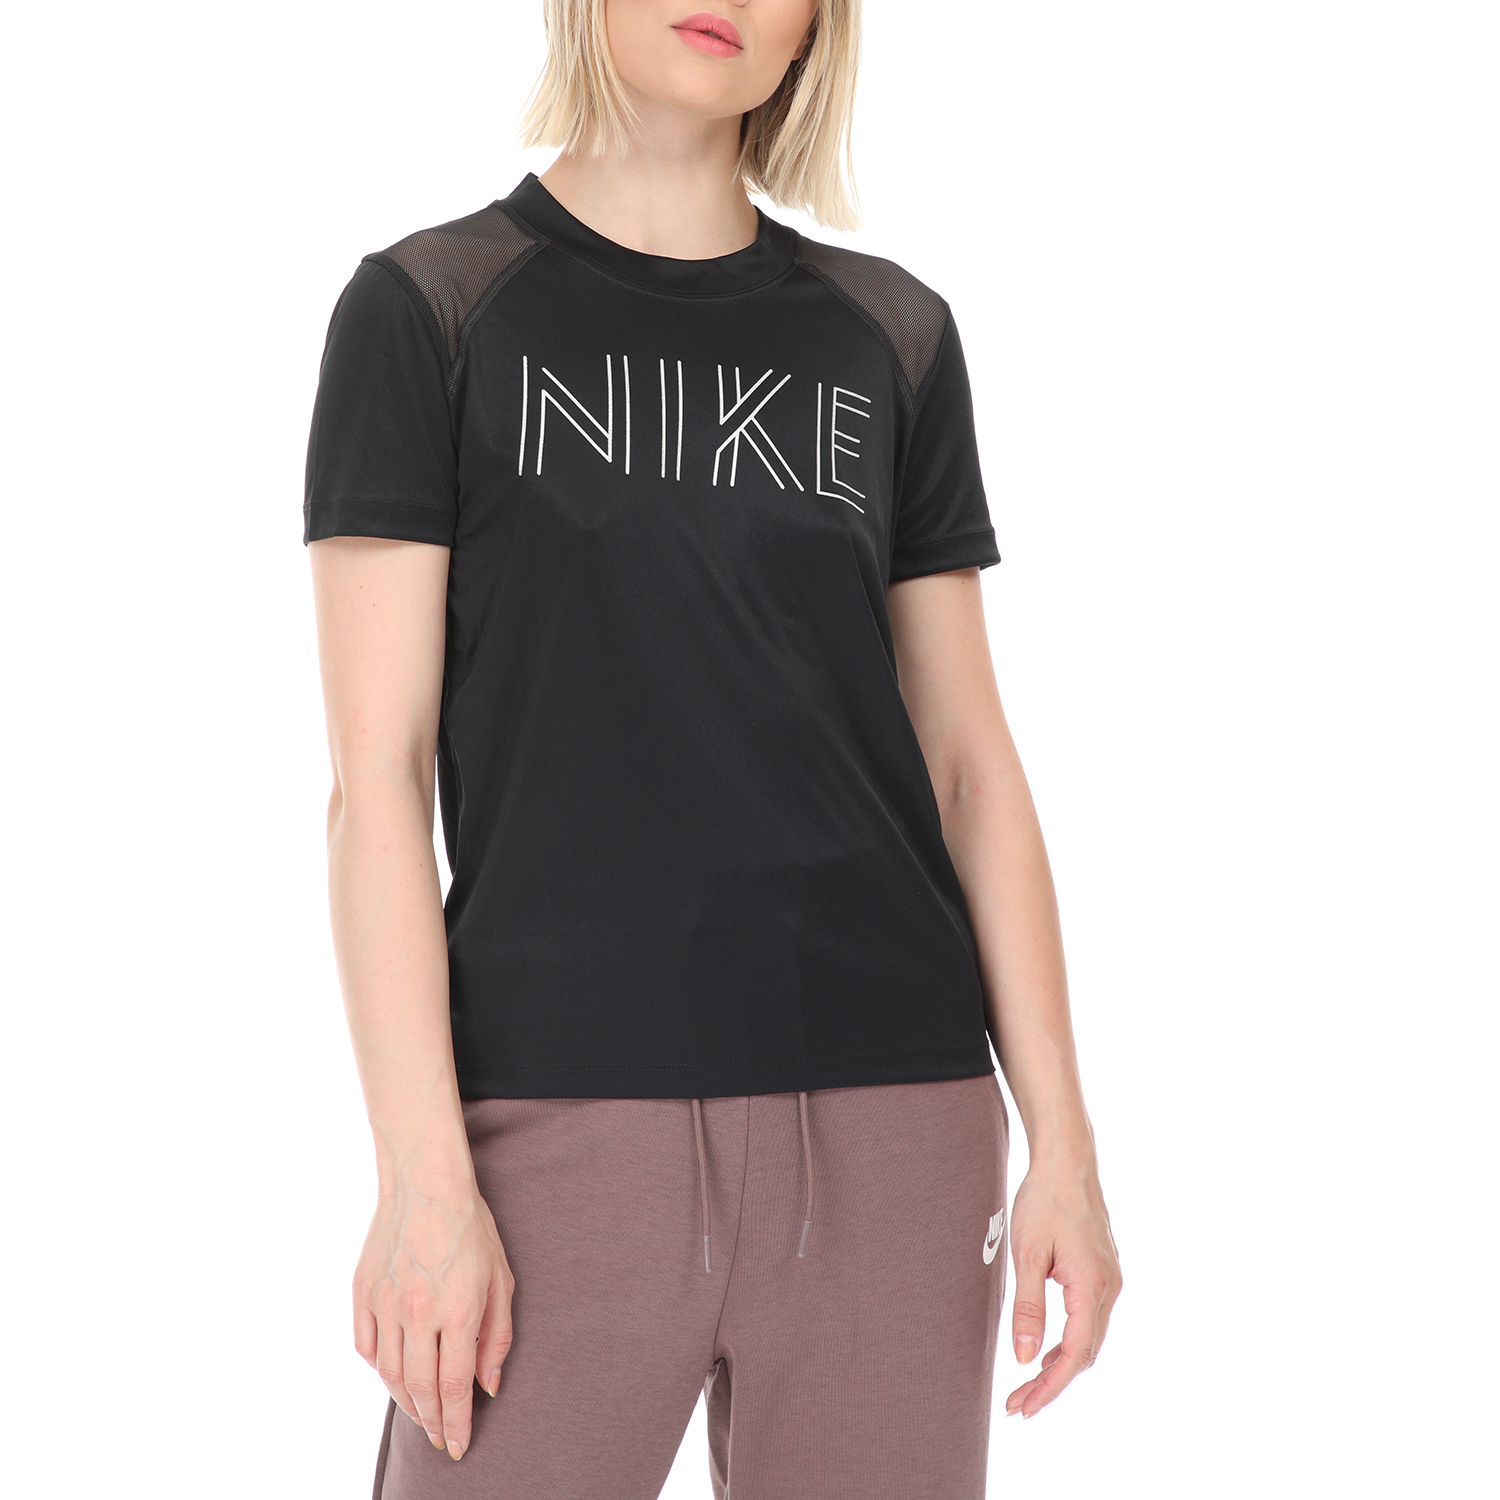 Γυναικεία/Ρούχα/Αθλητικά/T-shirt-Τοπ NIKE - Γυναικεία μπλούζα NIKE DRY MILER SS GX μαύρη